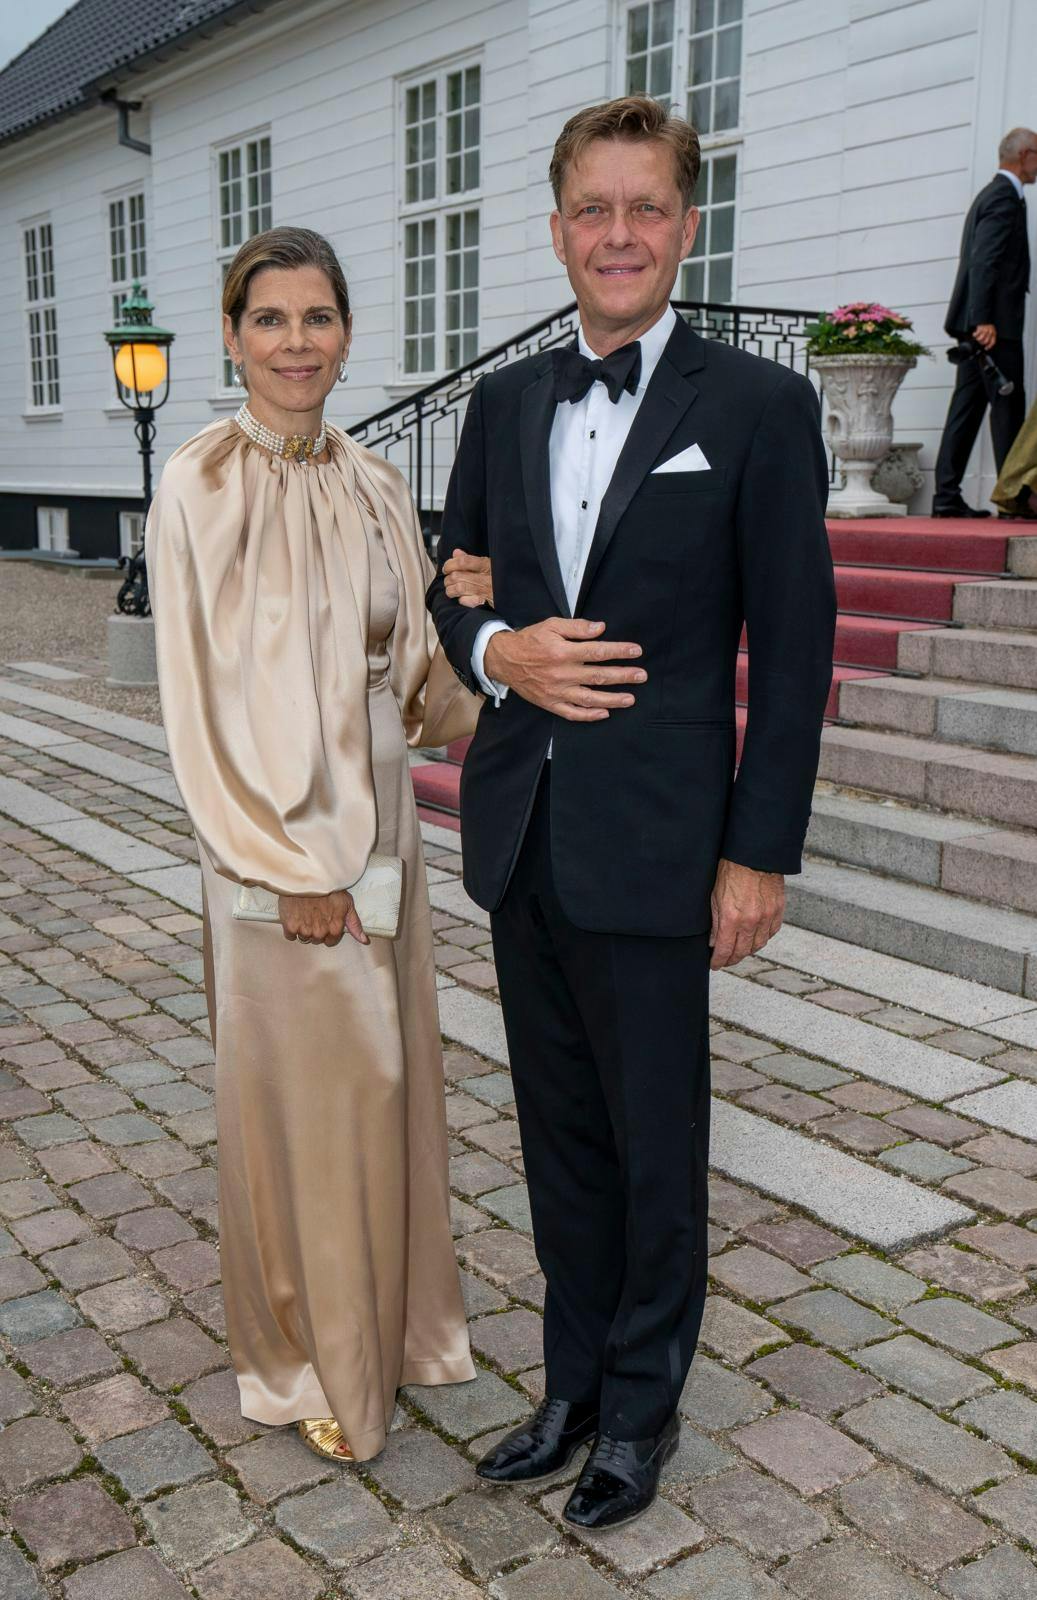 I privaten har Ellen Hillingsø skønt selskab af sin mand siden 2000, Christoffer Castenskiold.